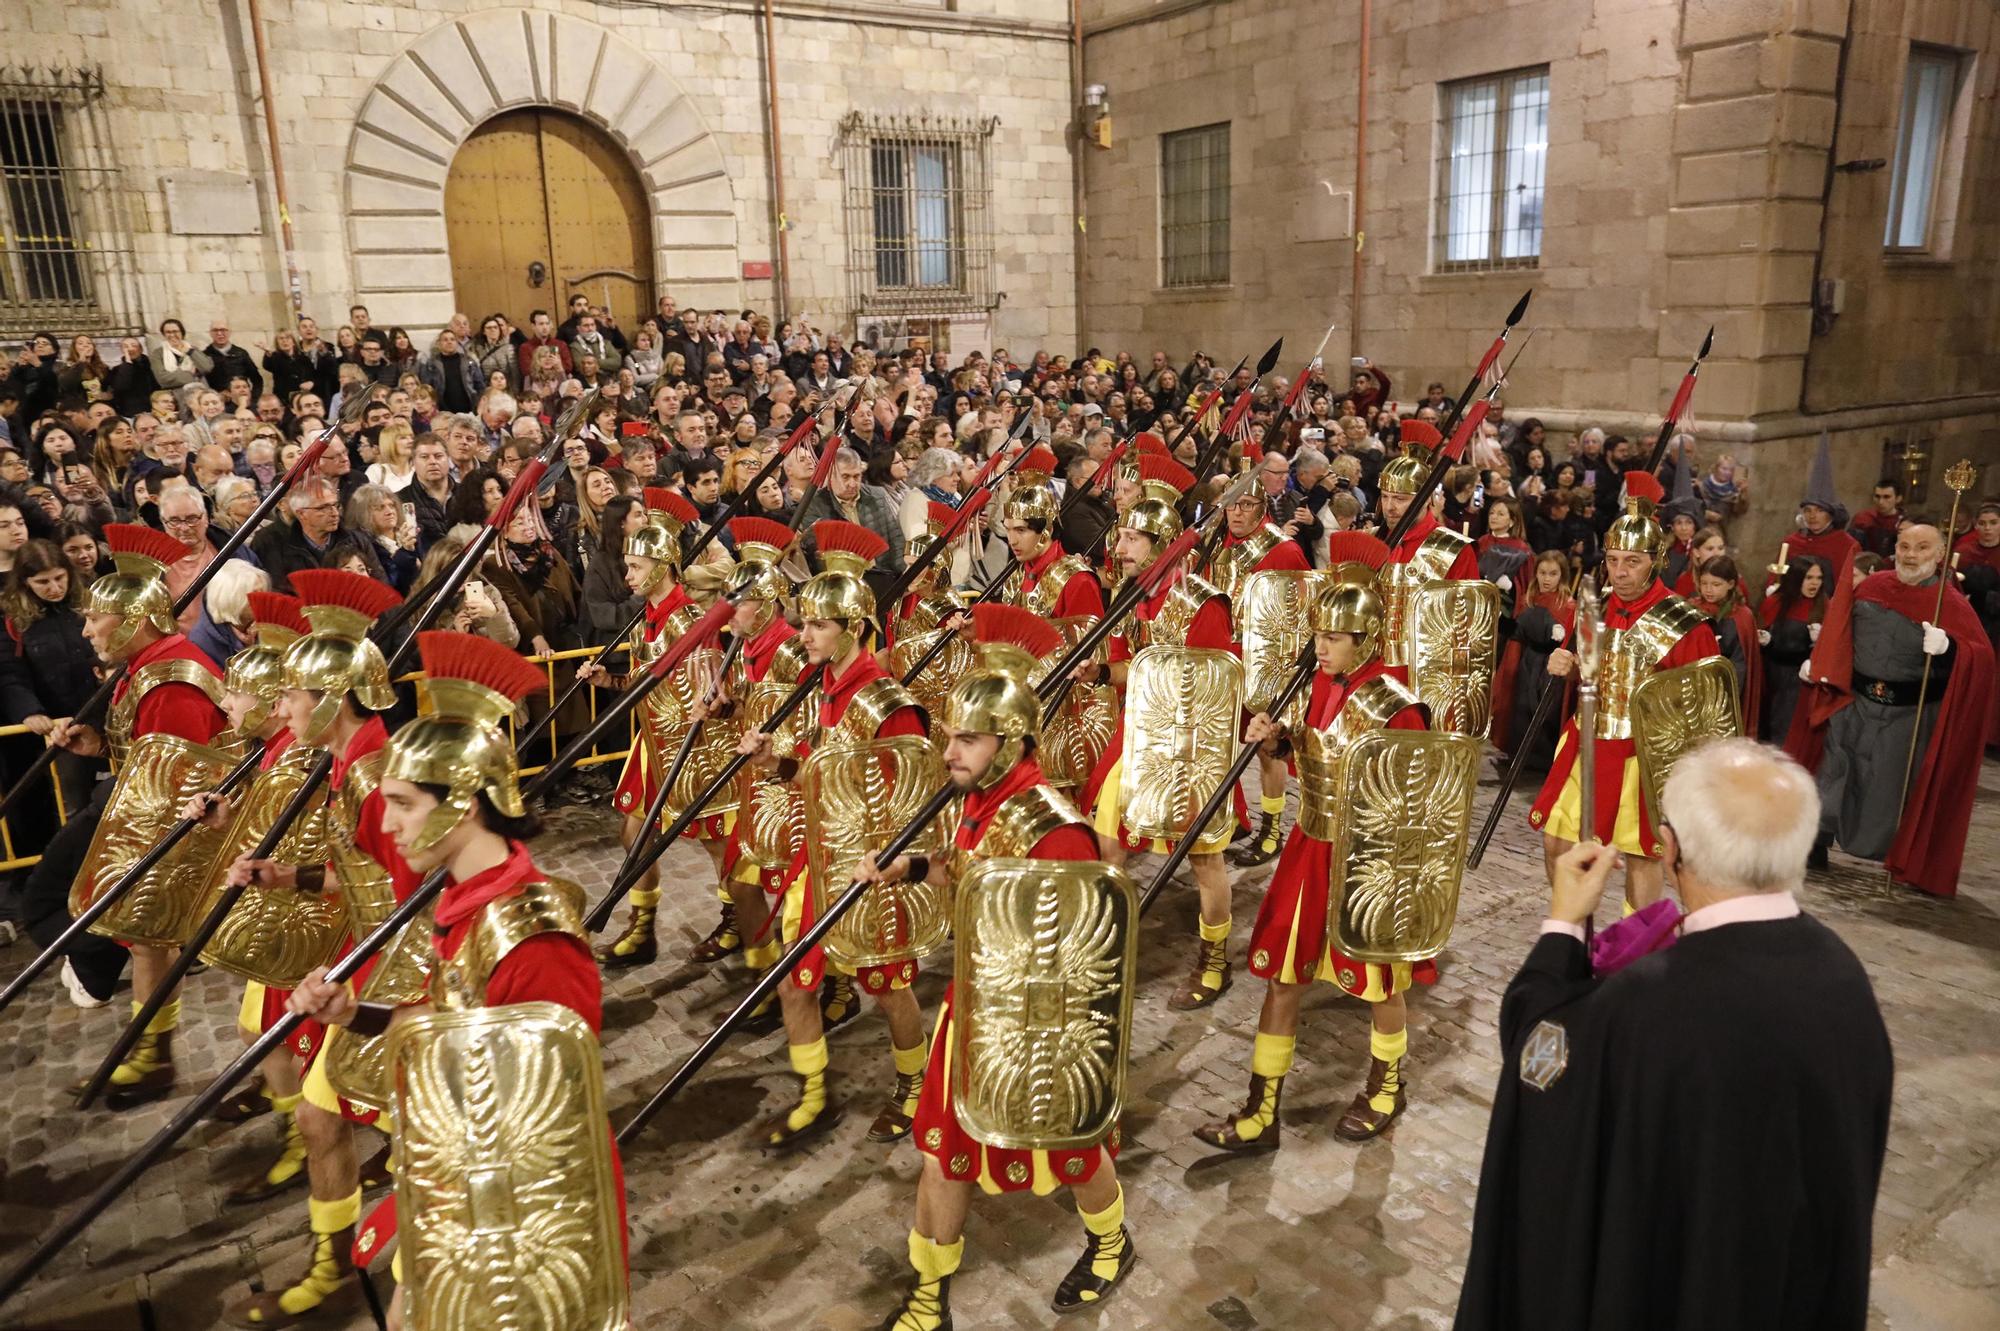 Les millors imatges de la Processó del Sant Enterrament de Girona